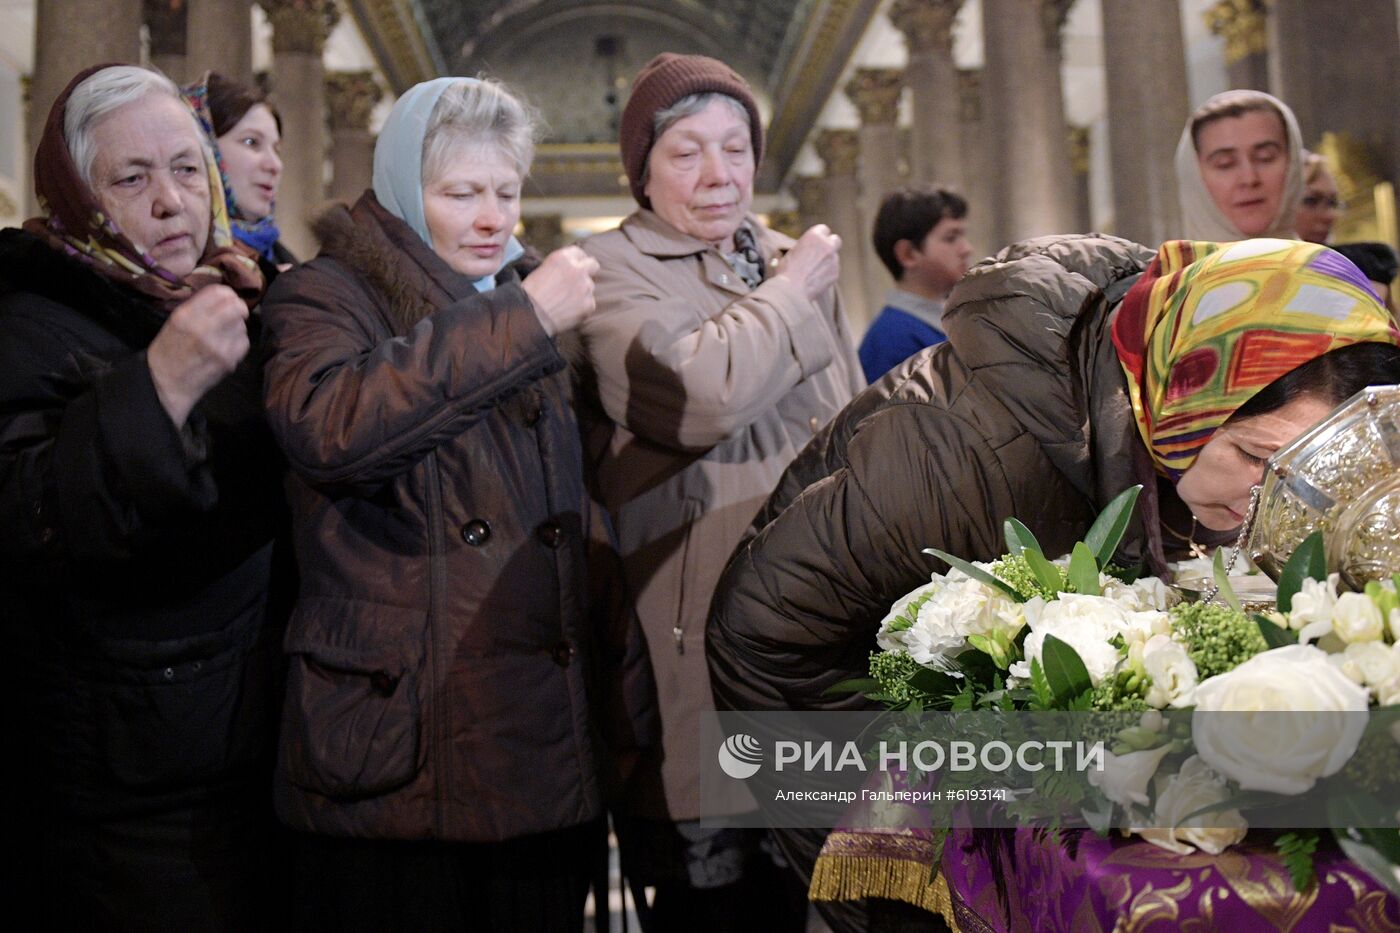 Мощи святого Иоанна Крестителя доставили в Санкт-Петербург